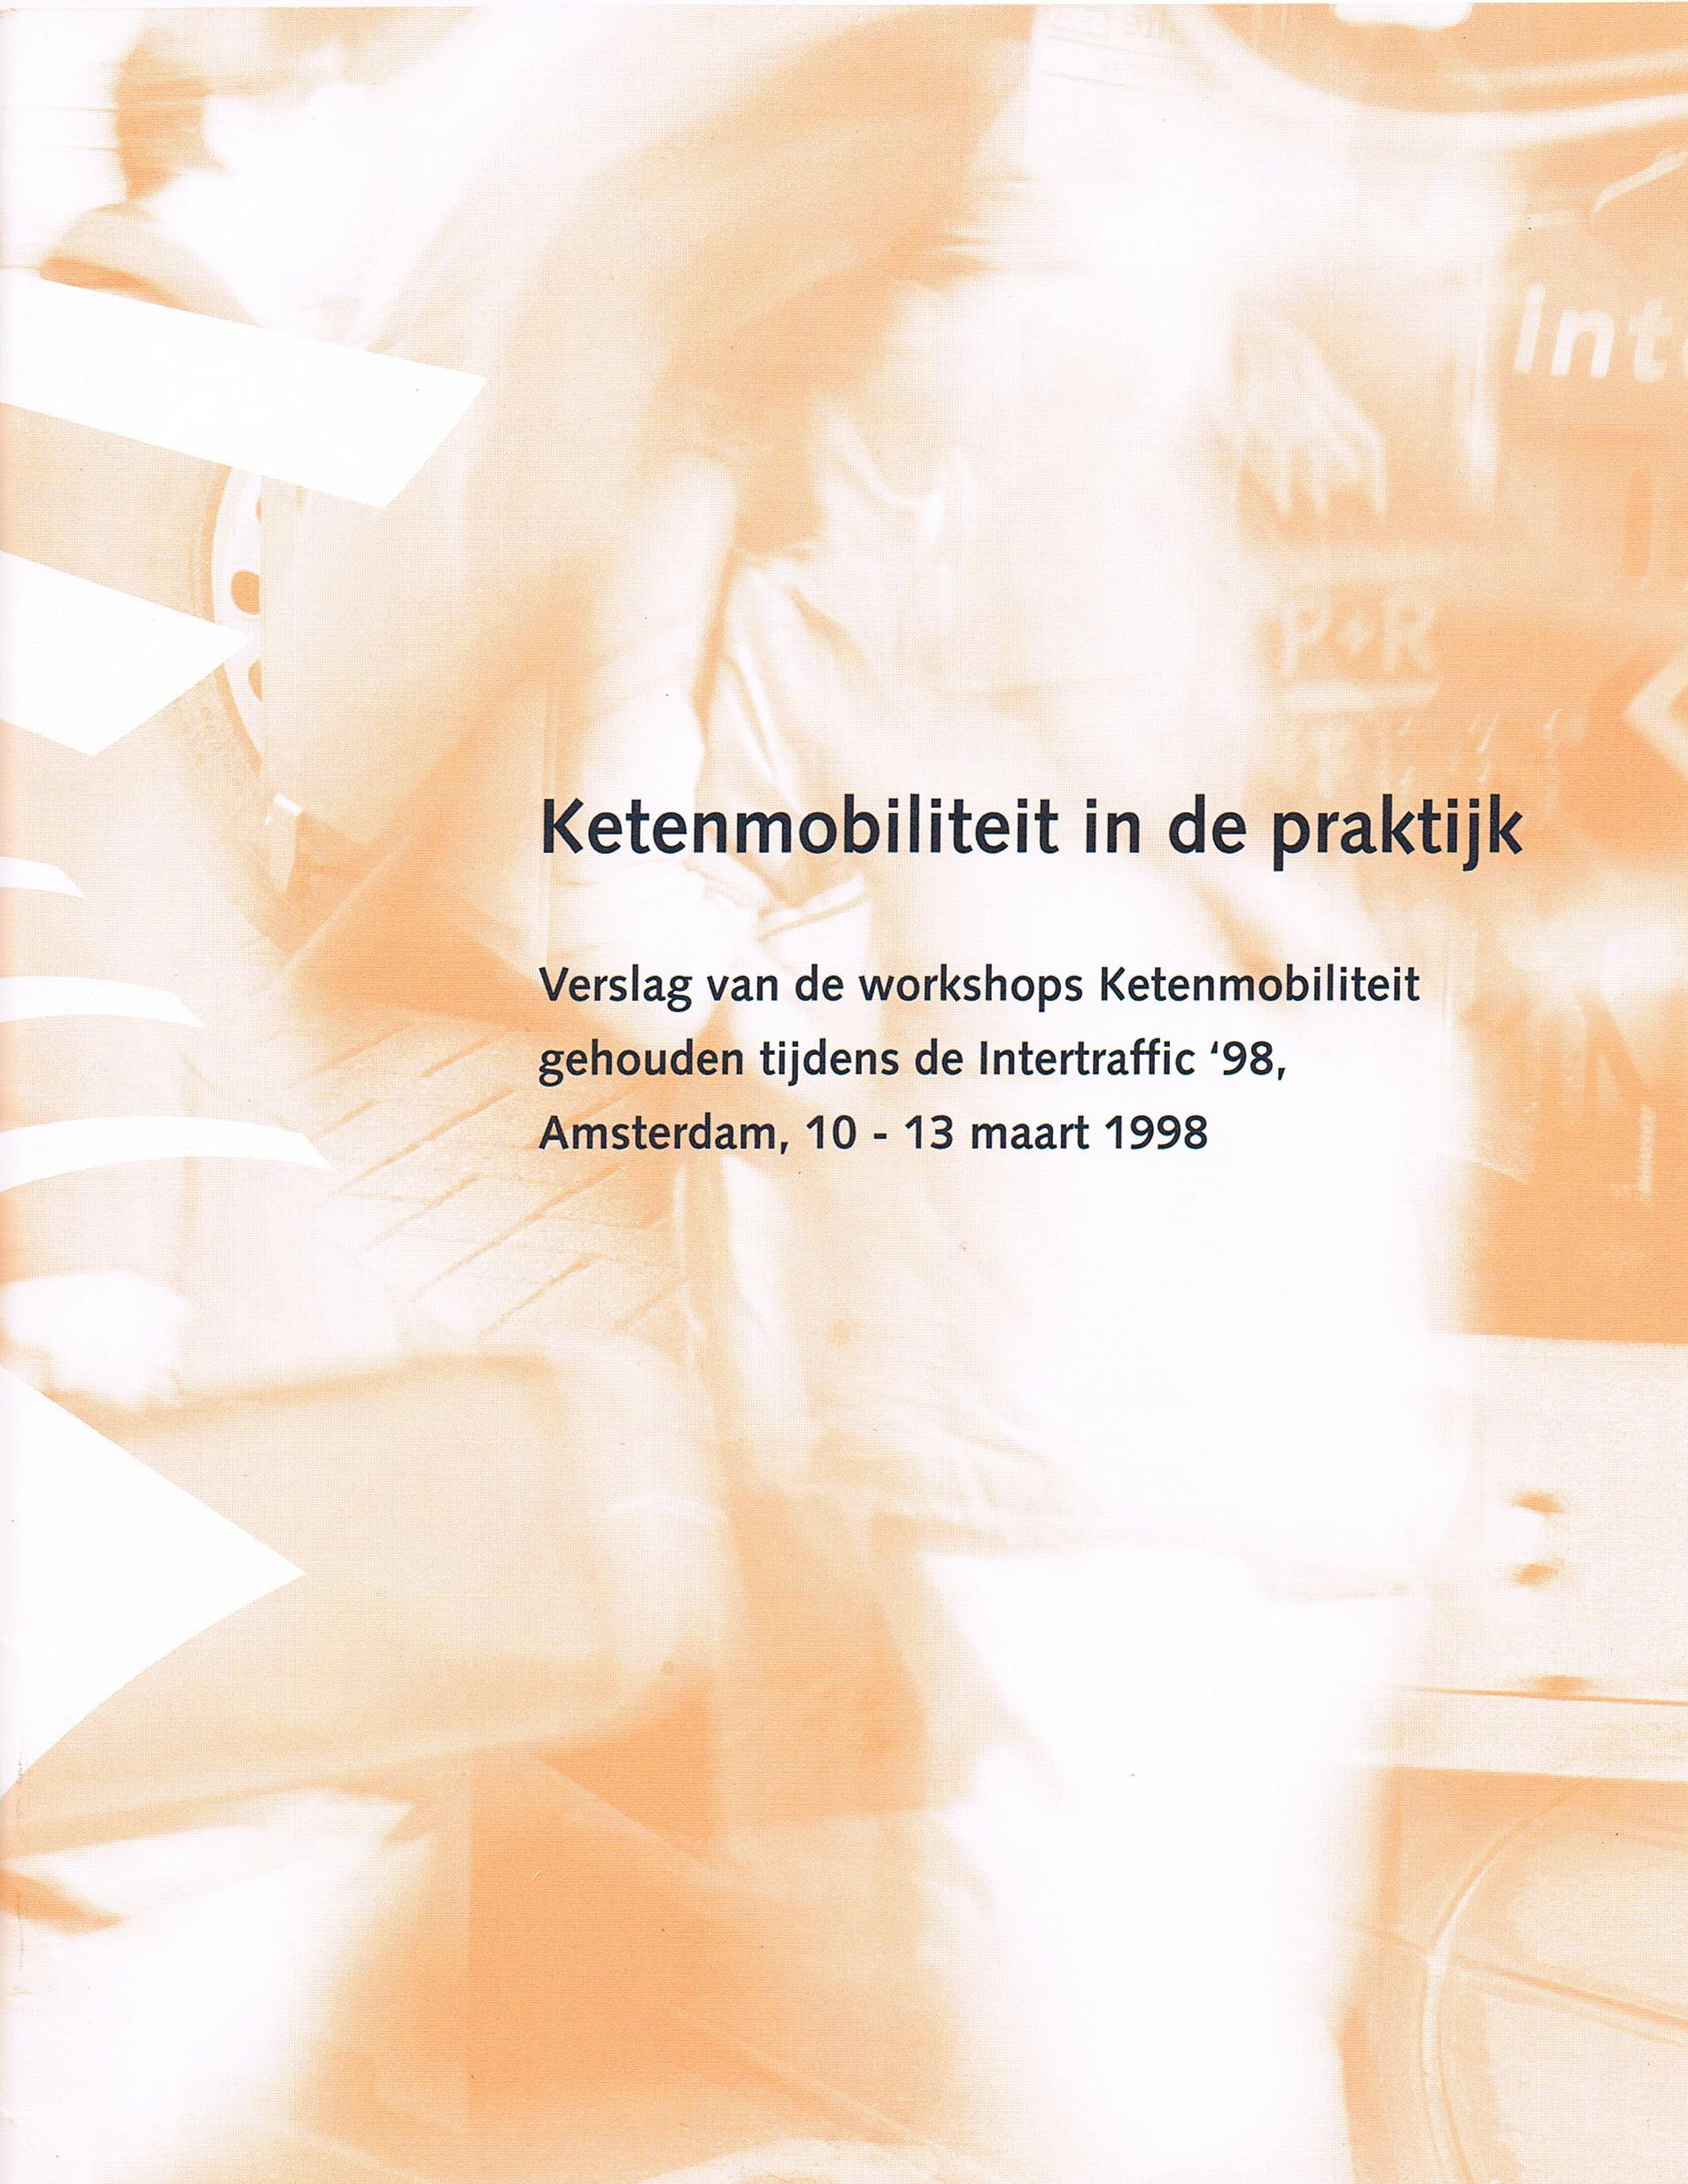 Verslag van de workshops gehouden van 10 - 13 maart 1998 in de Amsterdam RAI